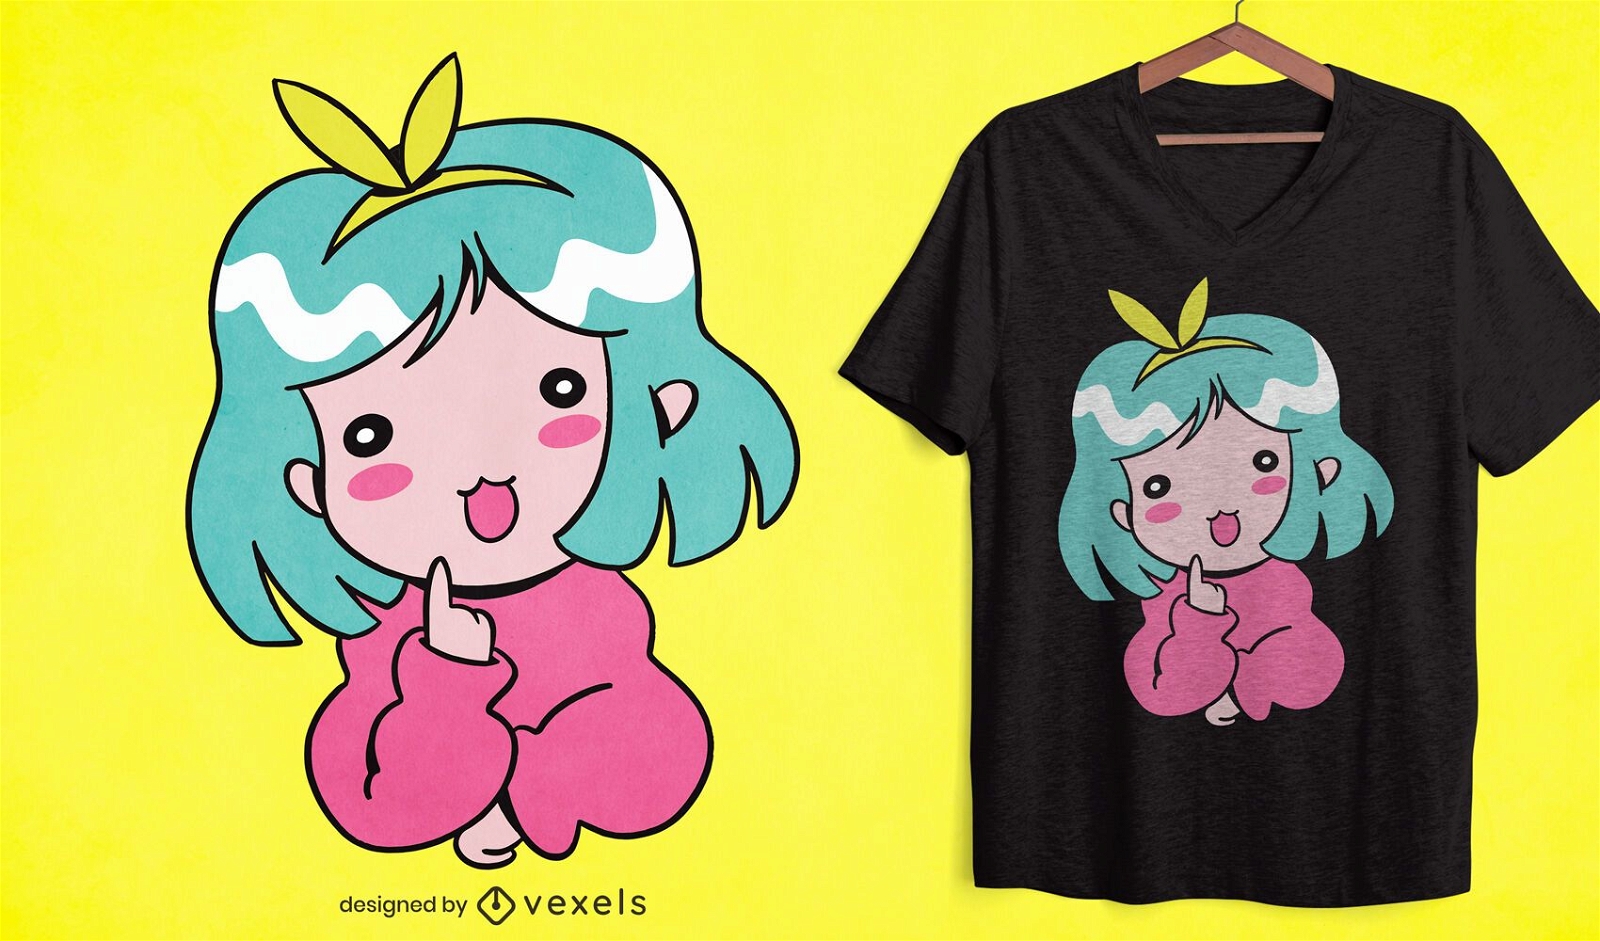 Silly cartoon little girl t-shirt design